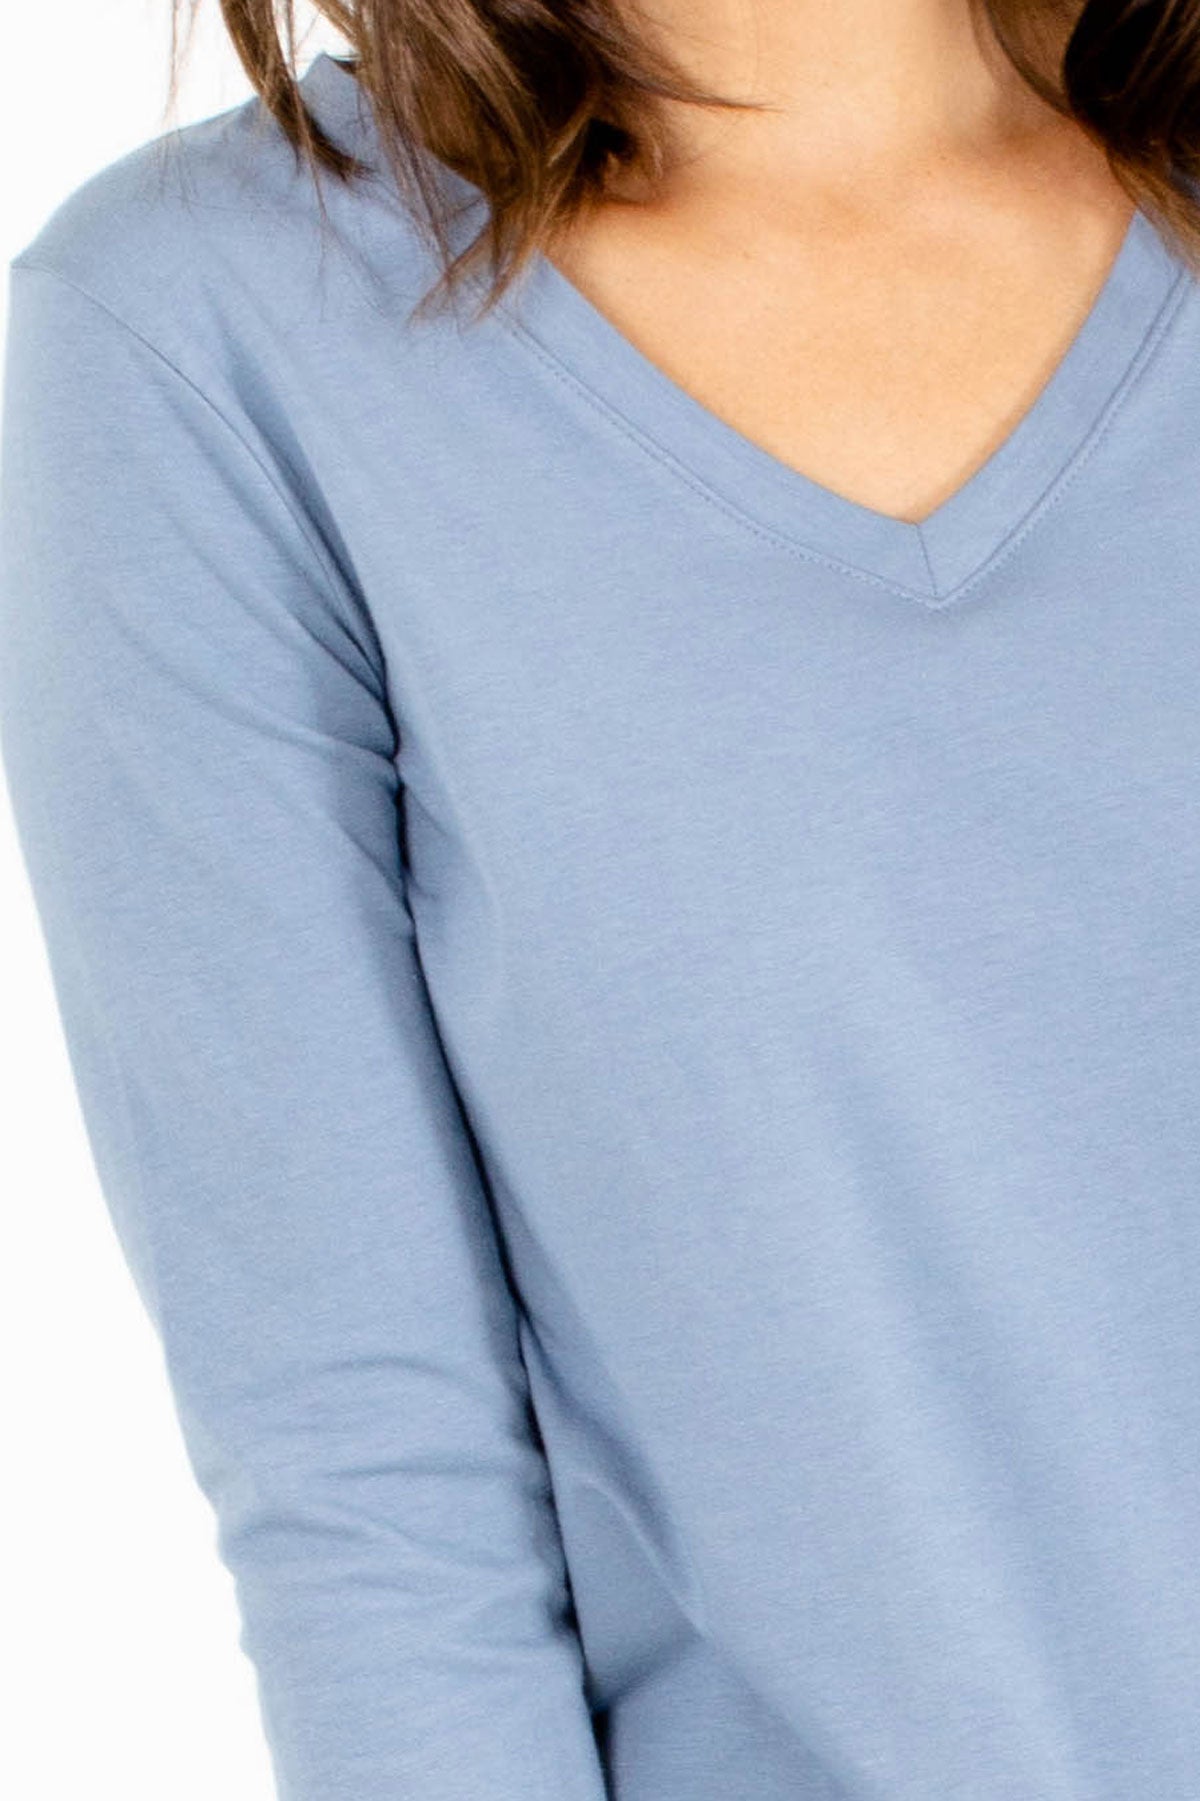 Women's Light Blue V Neck Long Sleeve Top